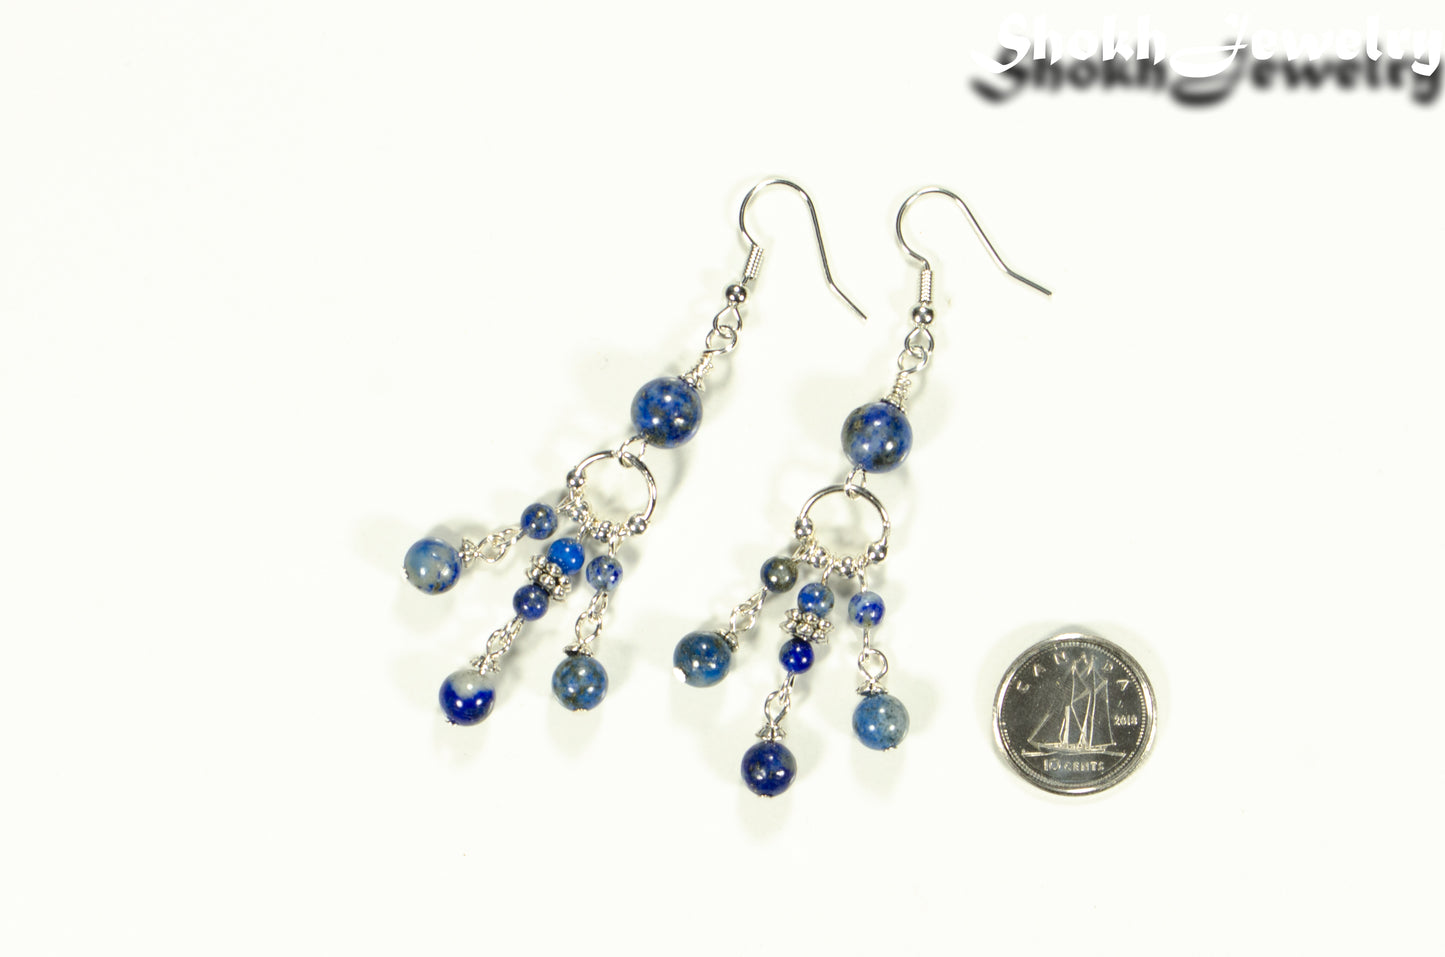 Statement Lapis Lazuli Chandelier Earrings beside a dime.